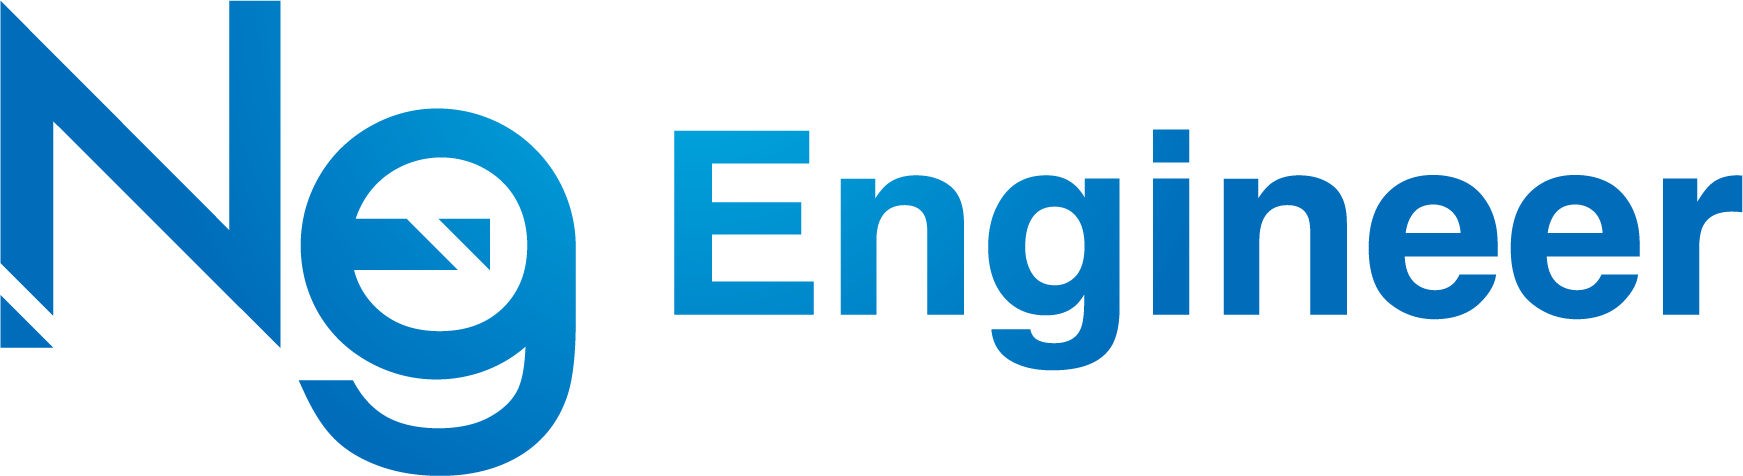 neg-engineer.com Logo